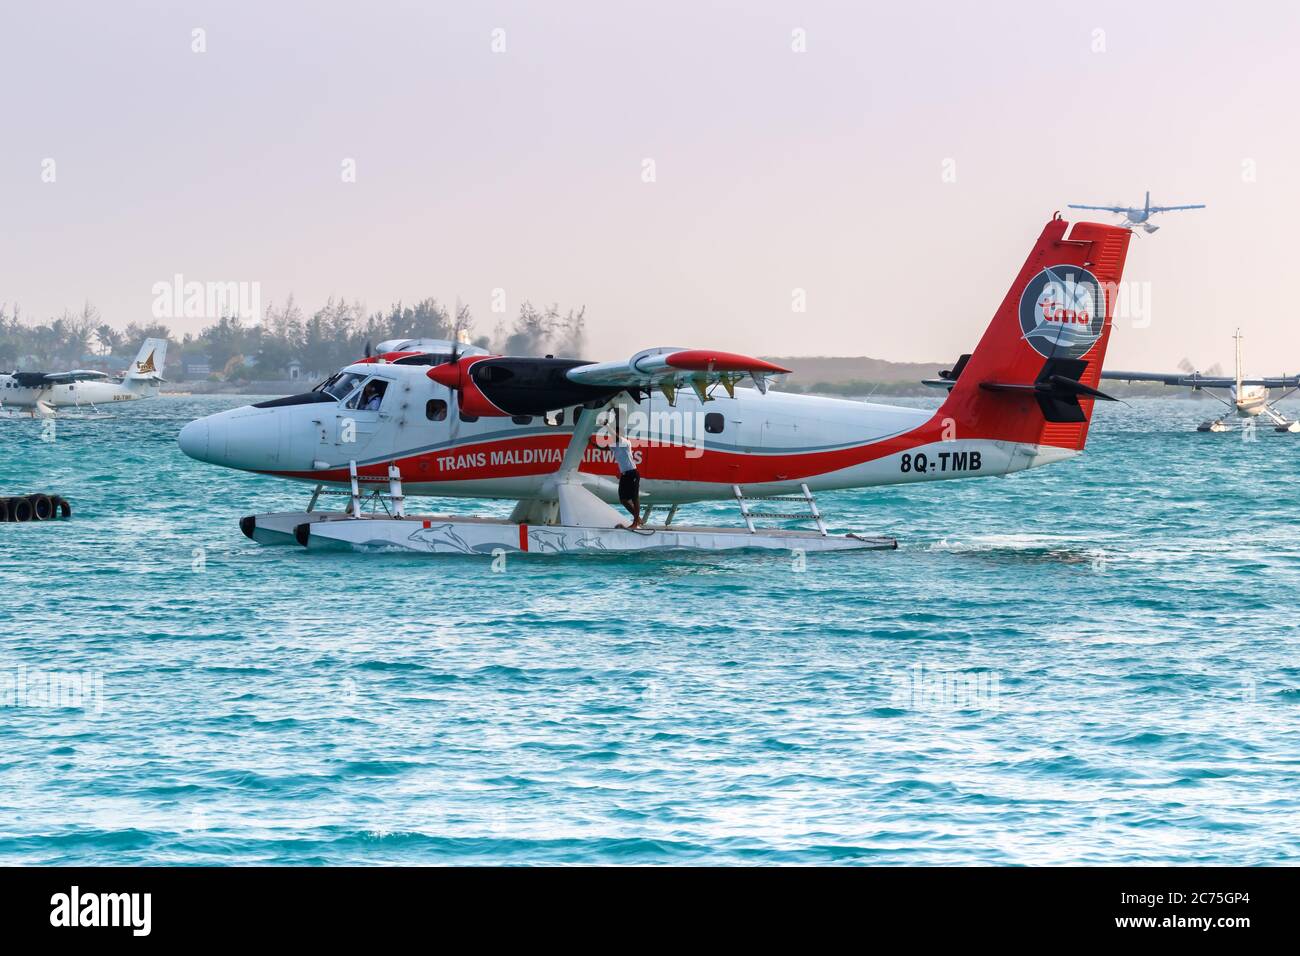 Male, Maldives - February 20, 2018: TMA - Trans Maldivian Airways De Havilland Canada DHC-6-300 Twin Otter seaplane at Male airport (MLE) in the Maldi Stock Photo